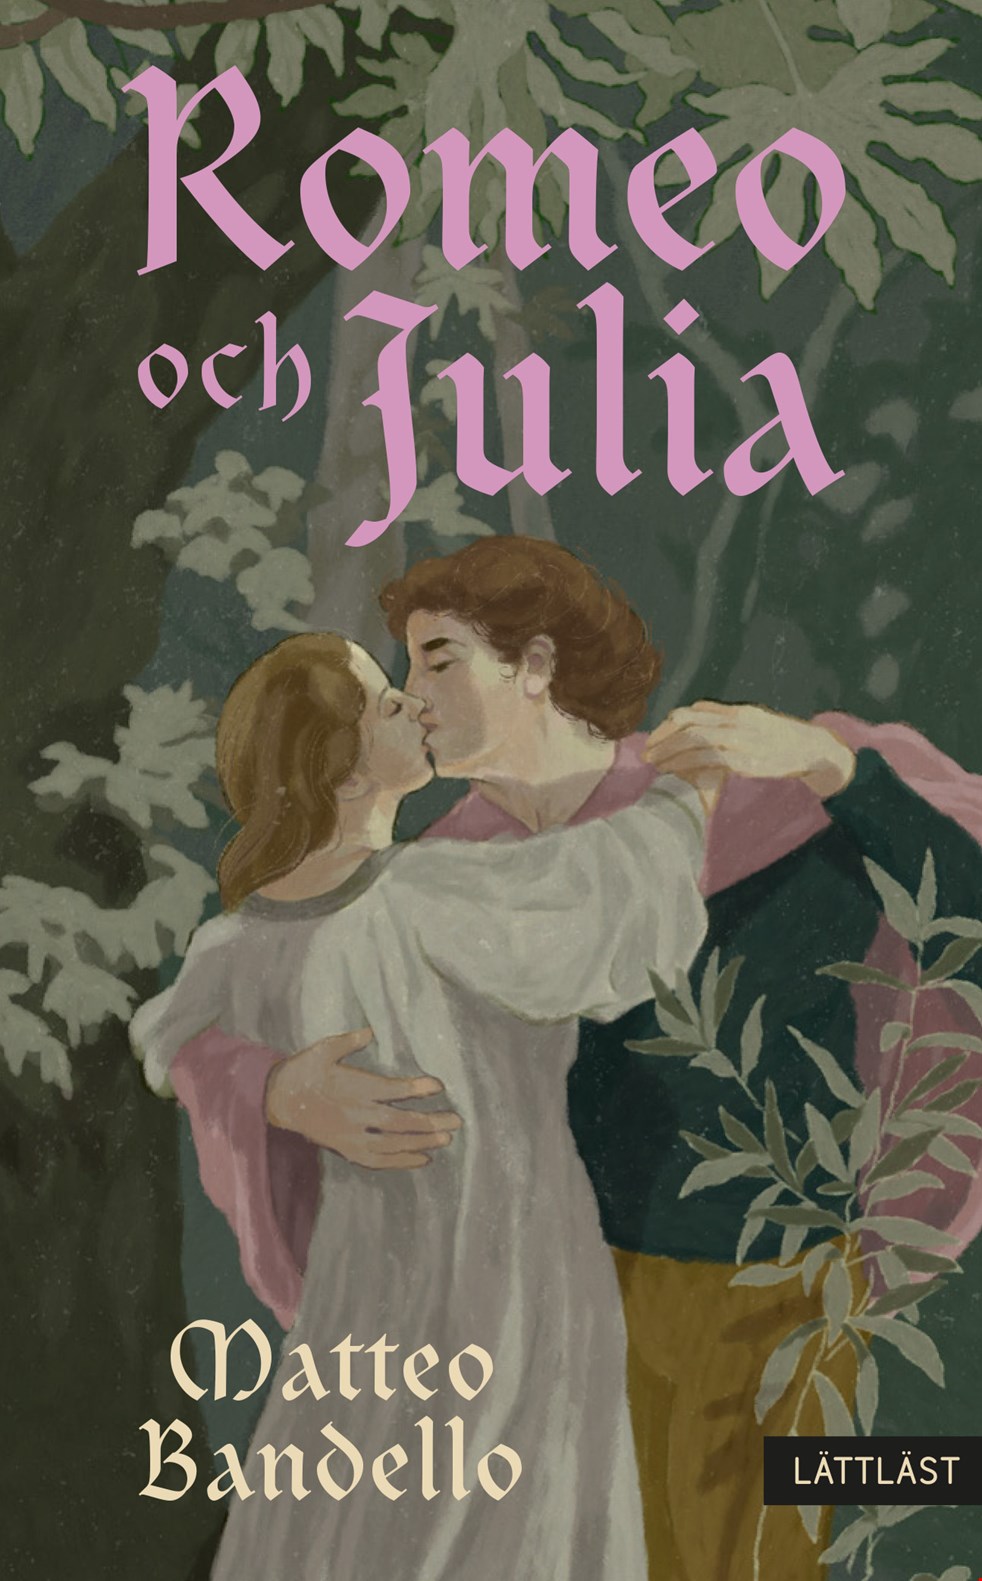 Bild på: omslag Romeo och Julia